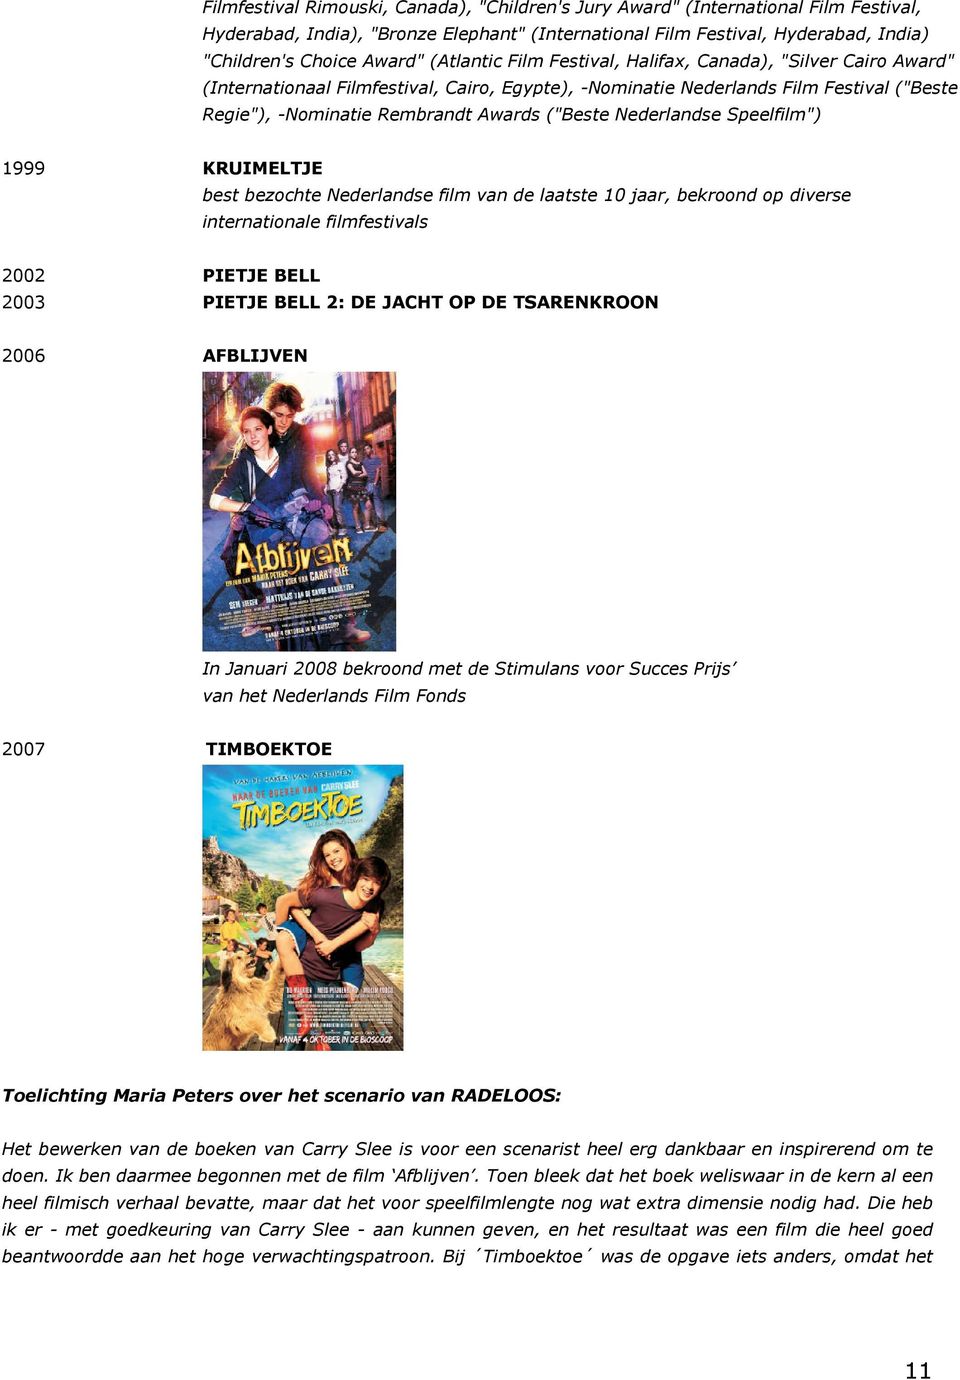 Nederlandse Speelfilm") 1999 KRUIMELTJE best bezochte Nederlandse film van de laatste 10 jaar, bekroond op diverse internationale filmfestivals 2002 PIETJE BELL 2003 PIETJE BELL 2: DE JACHT OP DE